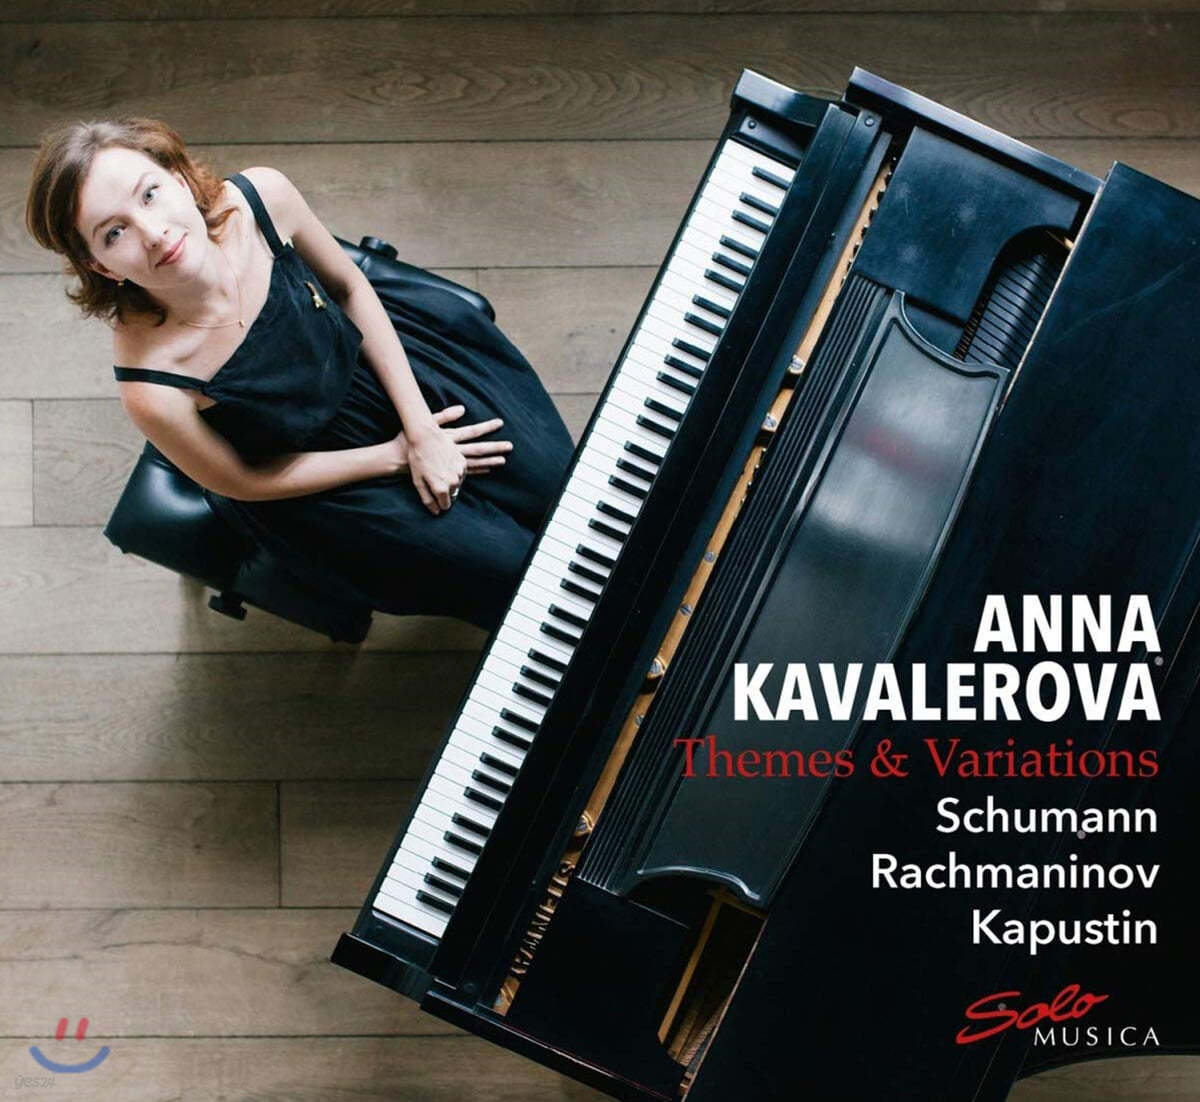 Anna Kavalerova 슈만: 교향적 연습곡 / 라흐마니노프: 코렐리 변주곡 / 니콜라이 카푸스틴: 변주곡